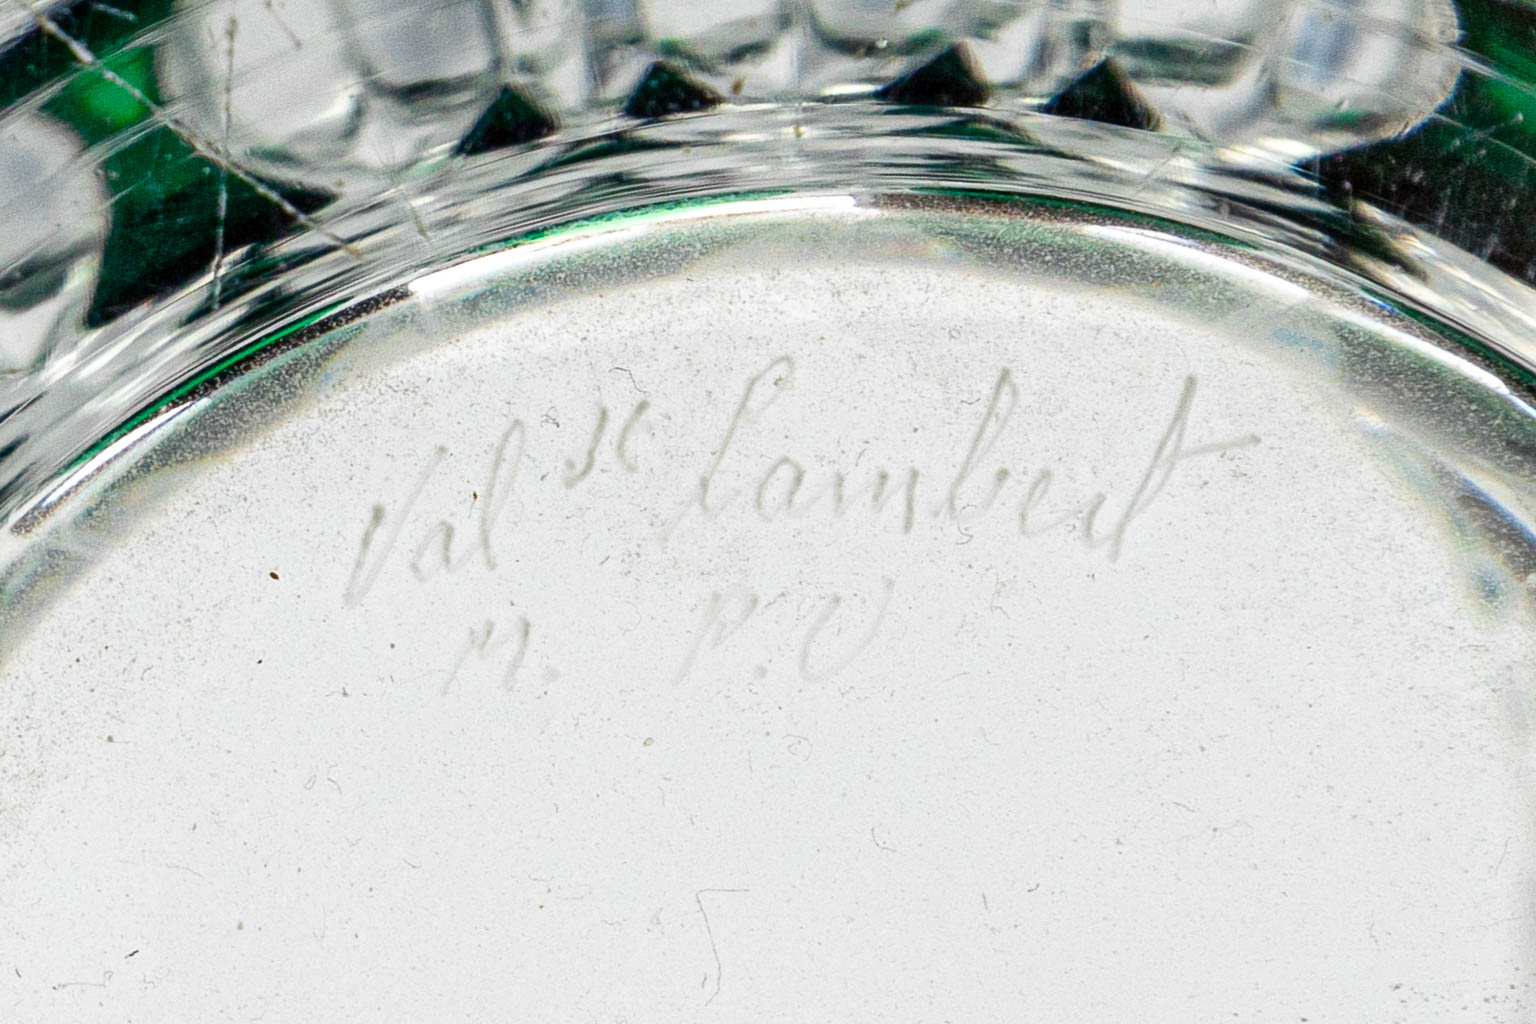 Een collectie van 2 vazen gemaakt uit geslepen kristal en gemerkt Val Saint Lambert (H:21,5cm)